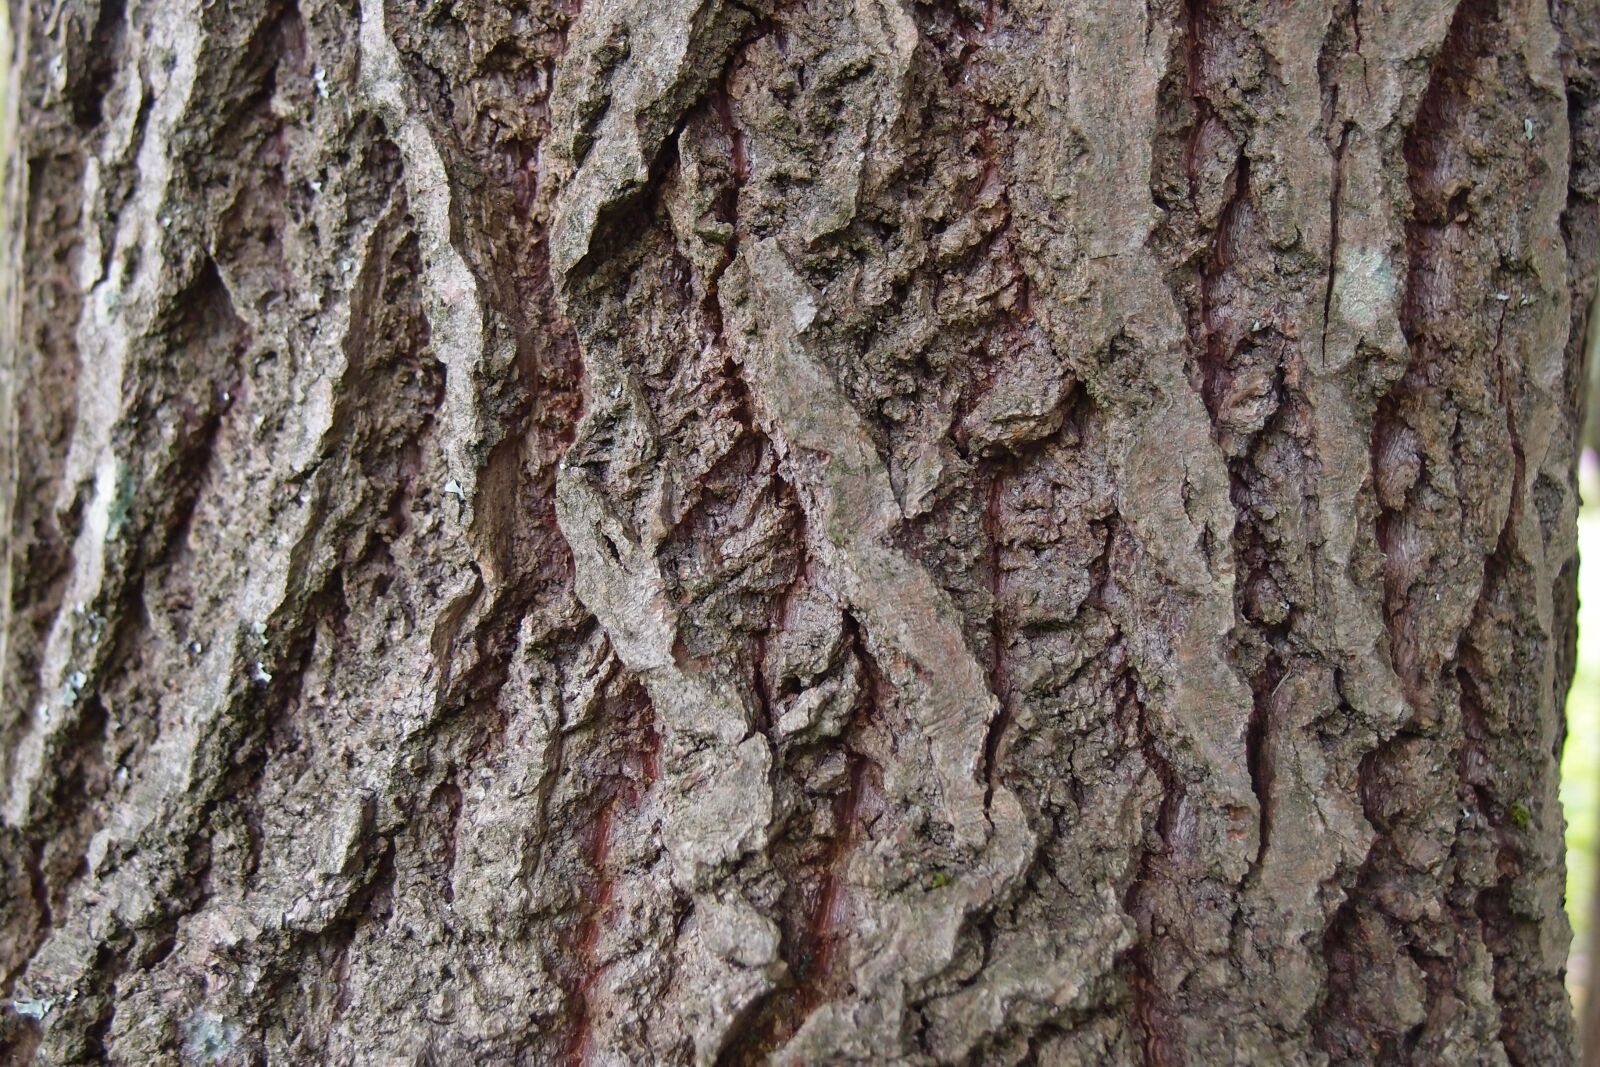 Olympus XZ-1 sample photo. Bark, tree, texture photography